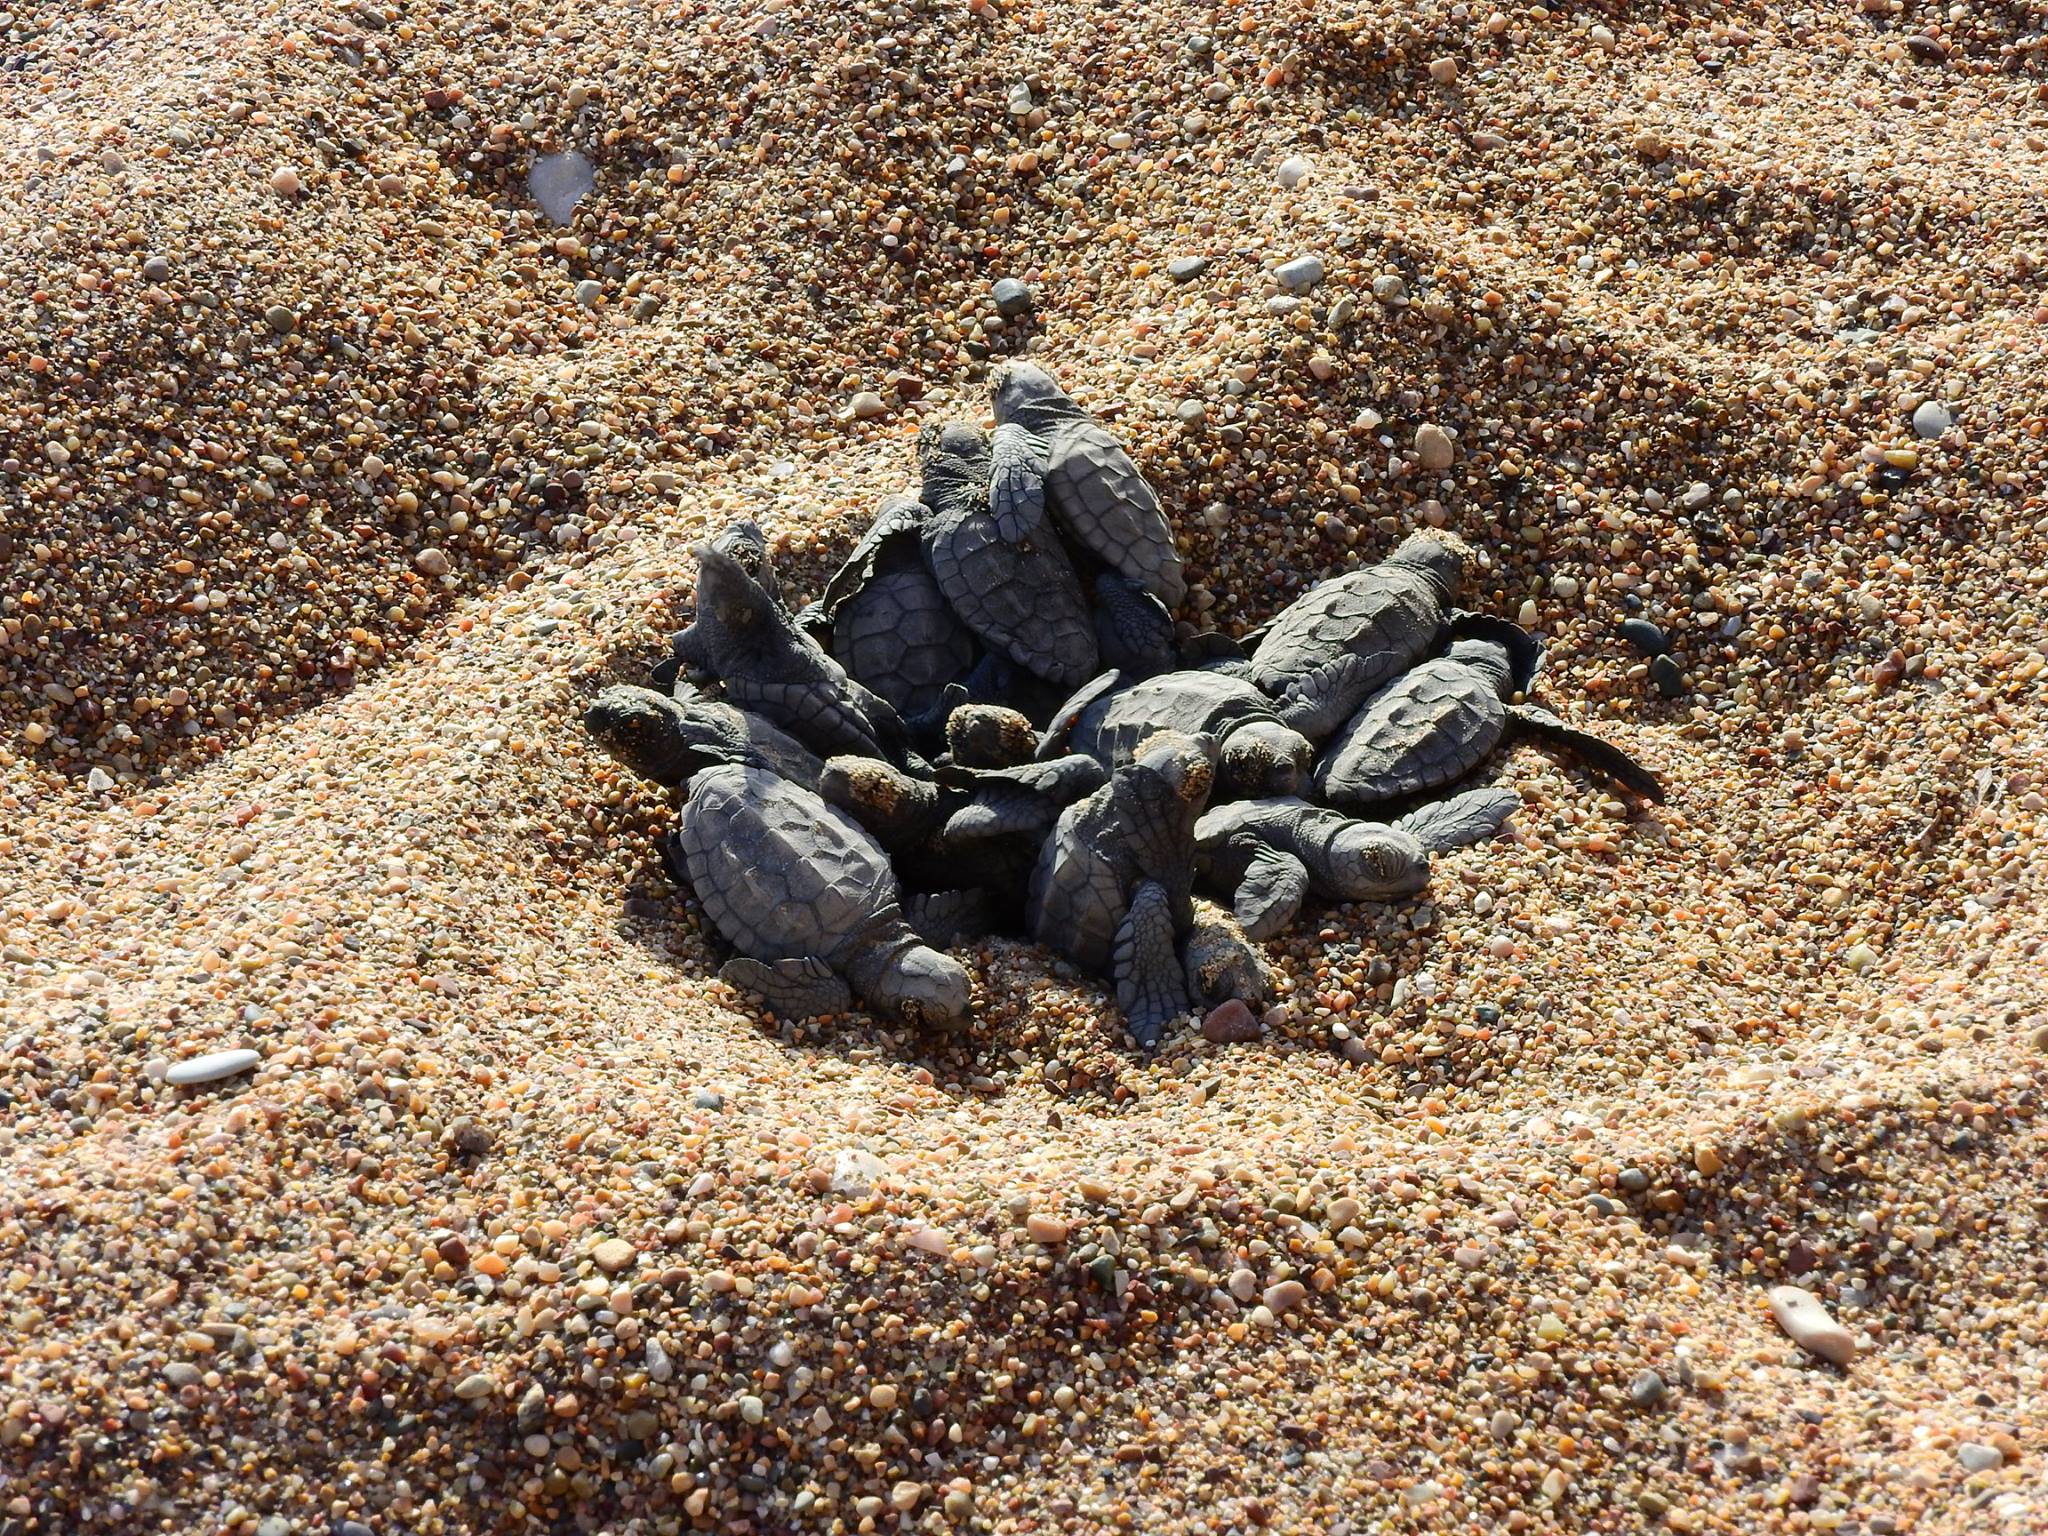 ΠΑΦΟΣ: Μπουλντόζες δίπλα από αυγά χελωνών - Νέο περιστατικό οικολογικής καταστροφής - ΦΩΤΟΓΡΑΦΙΕΣ